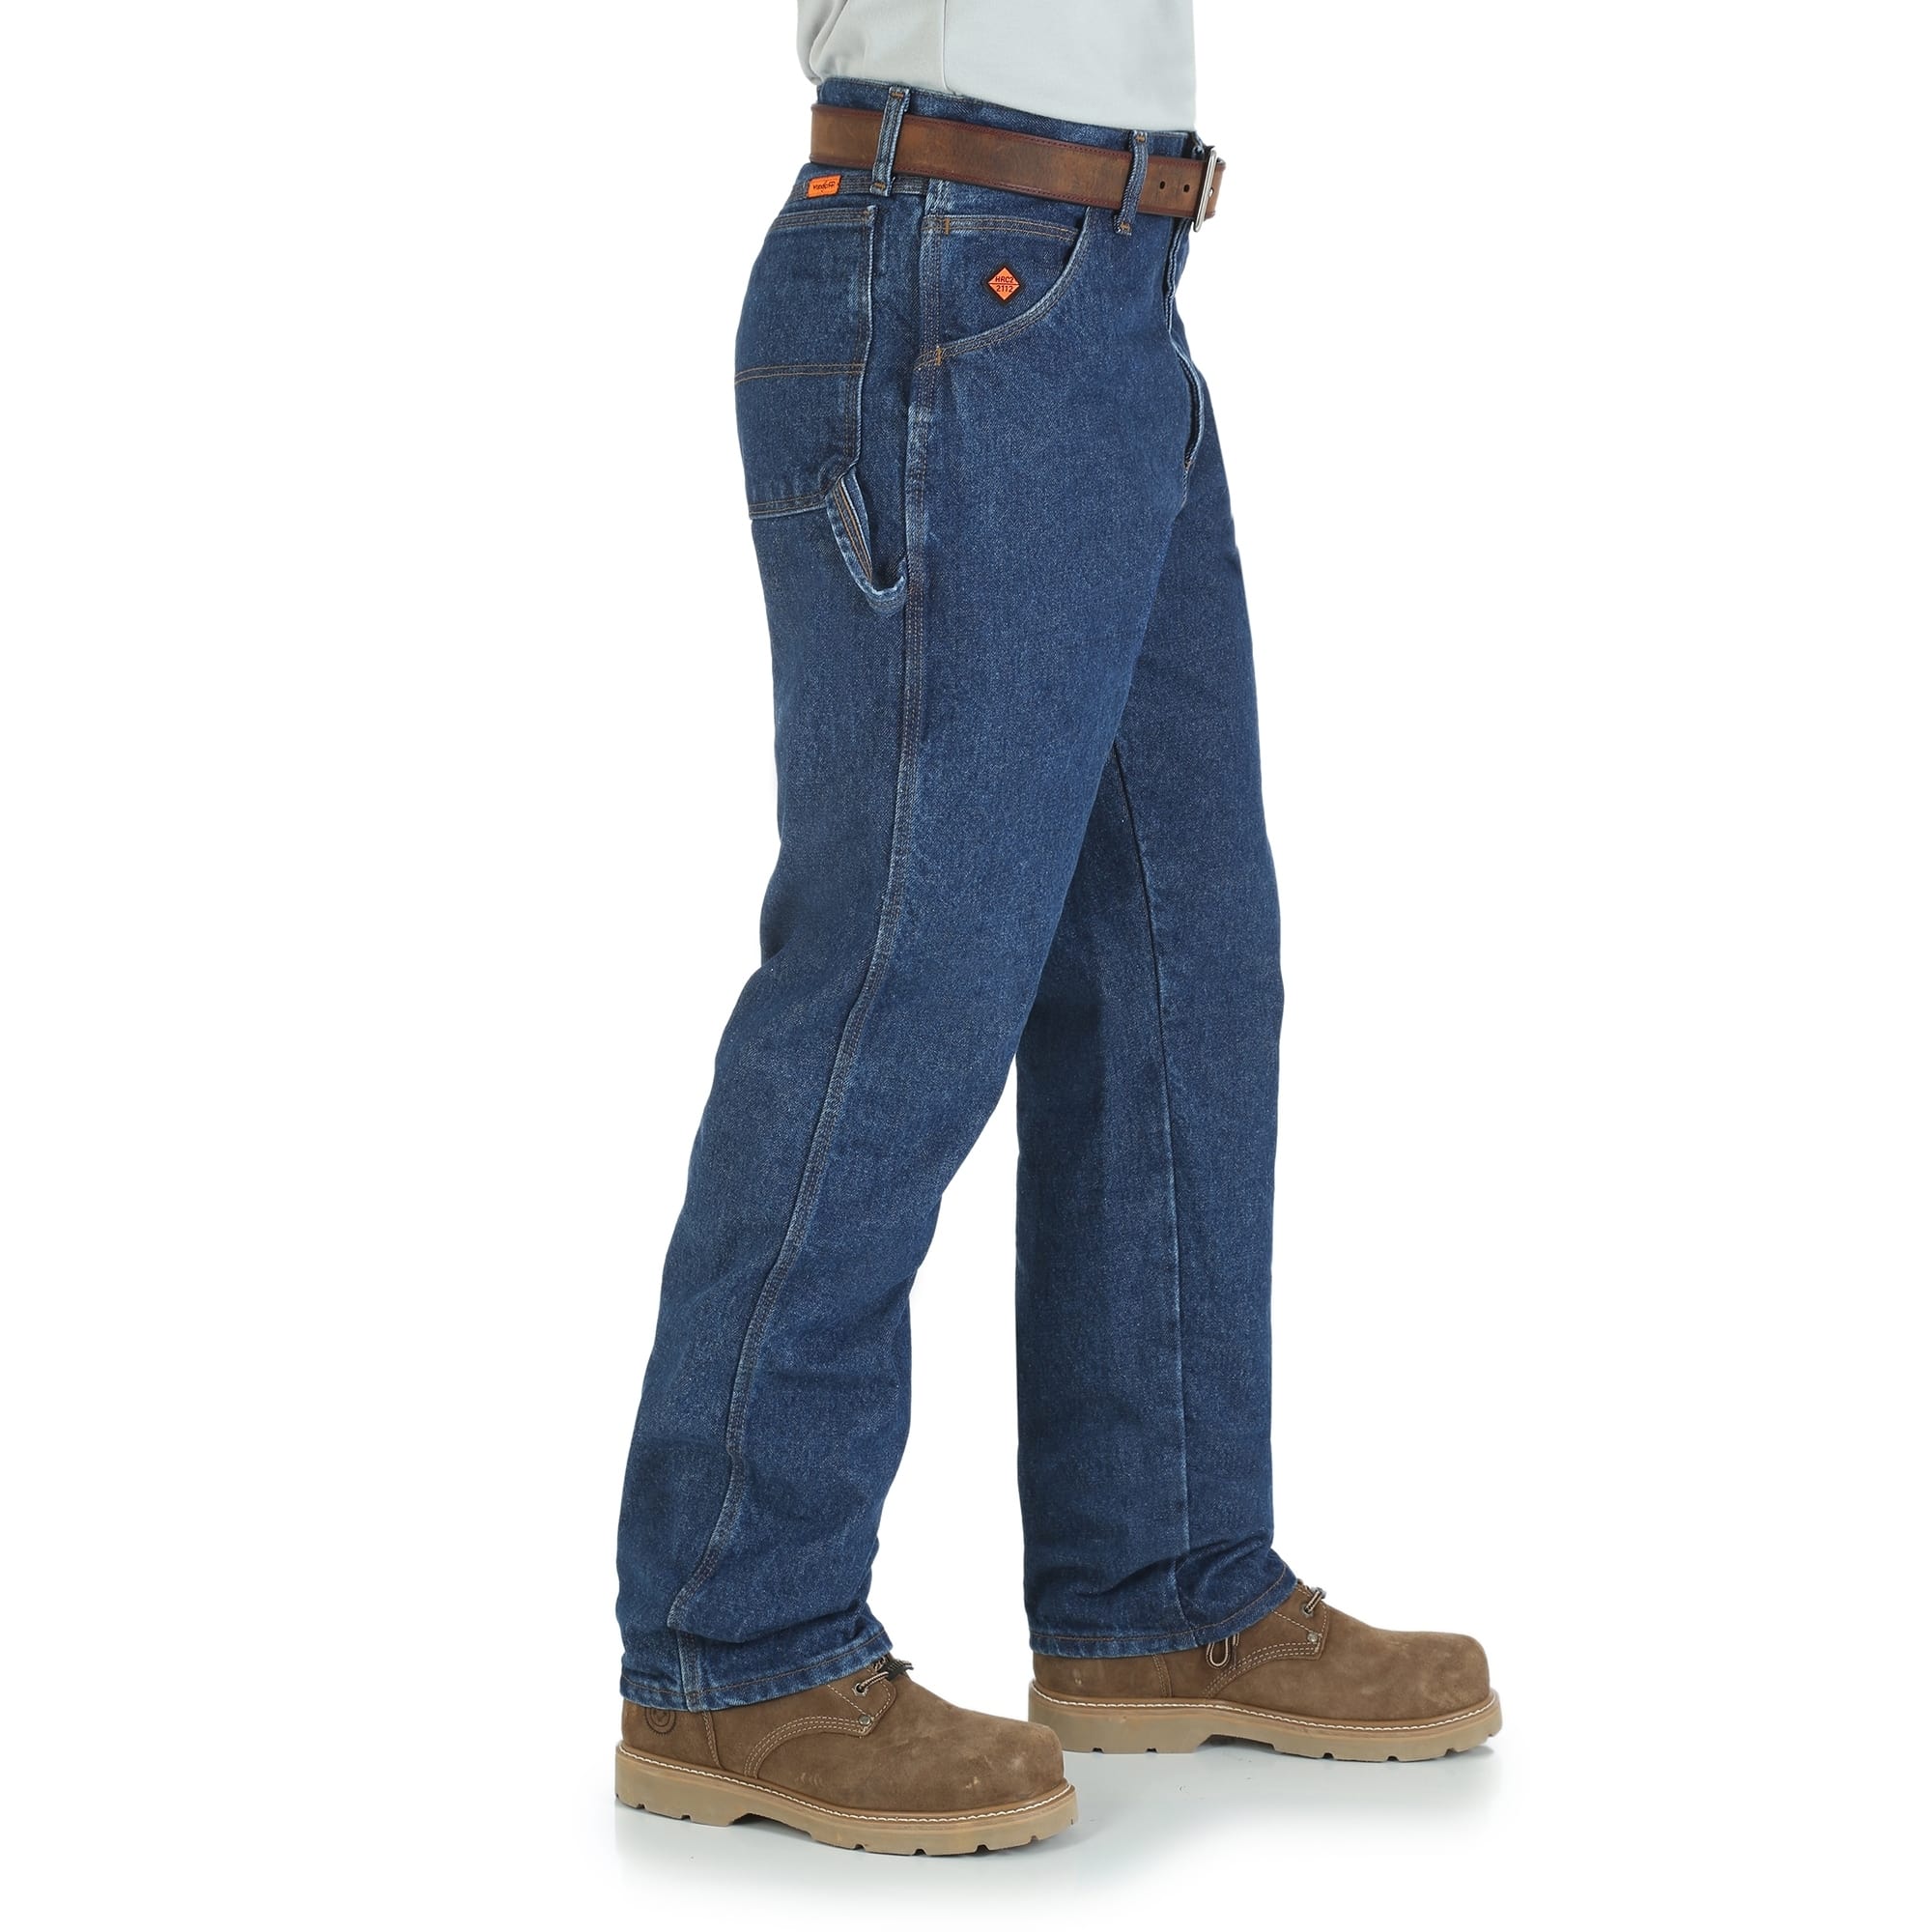 riggs carpenter jeans